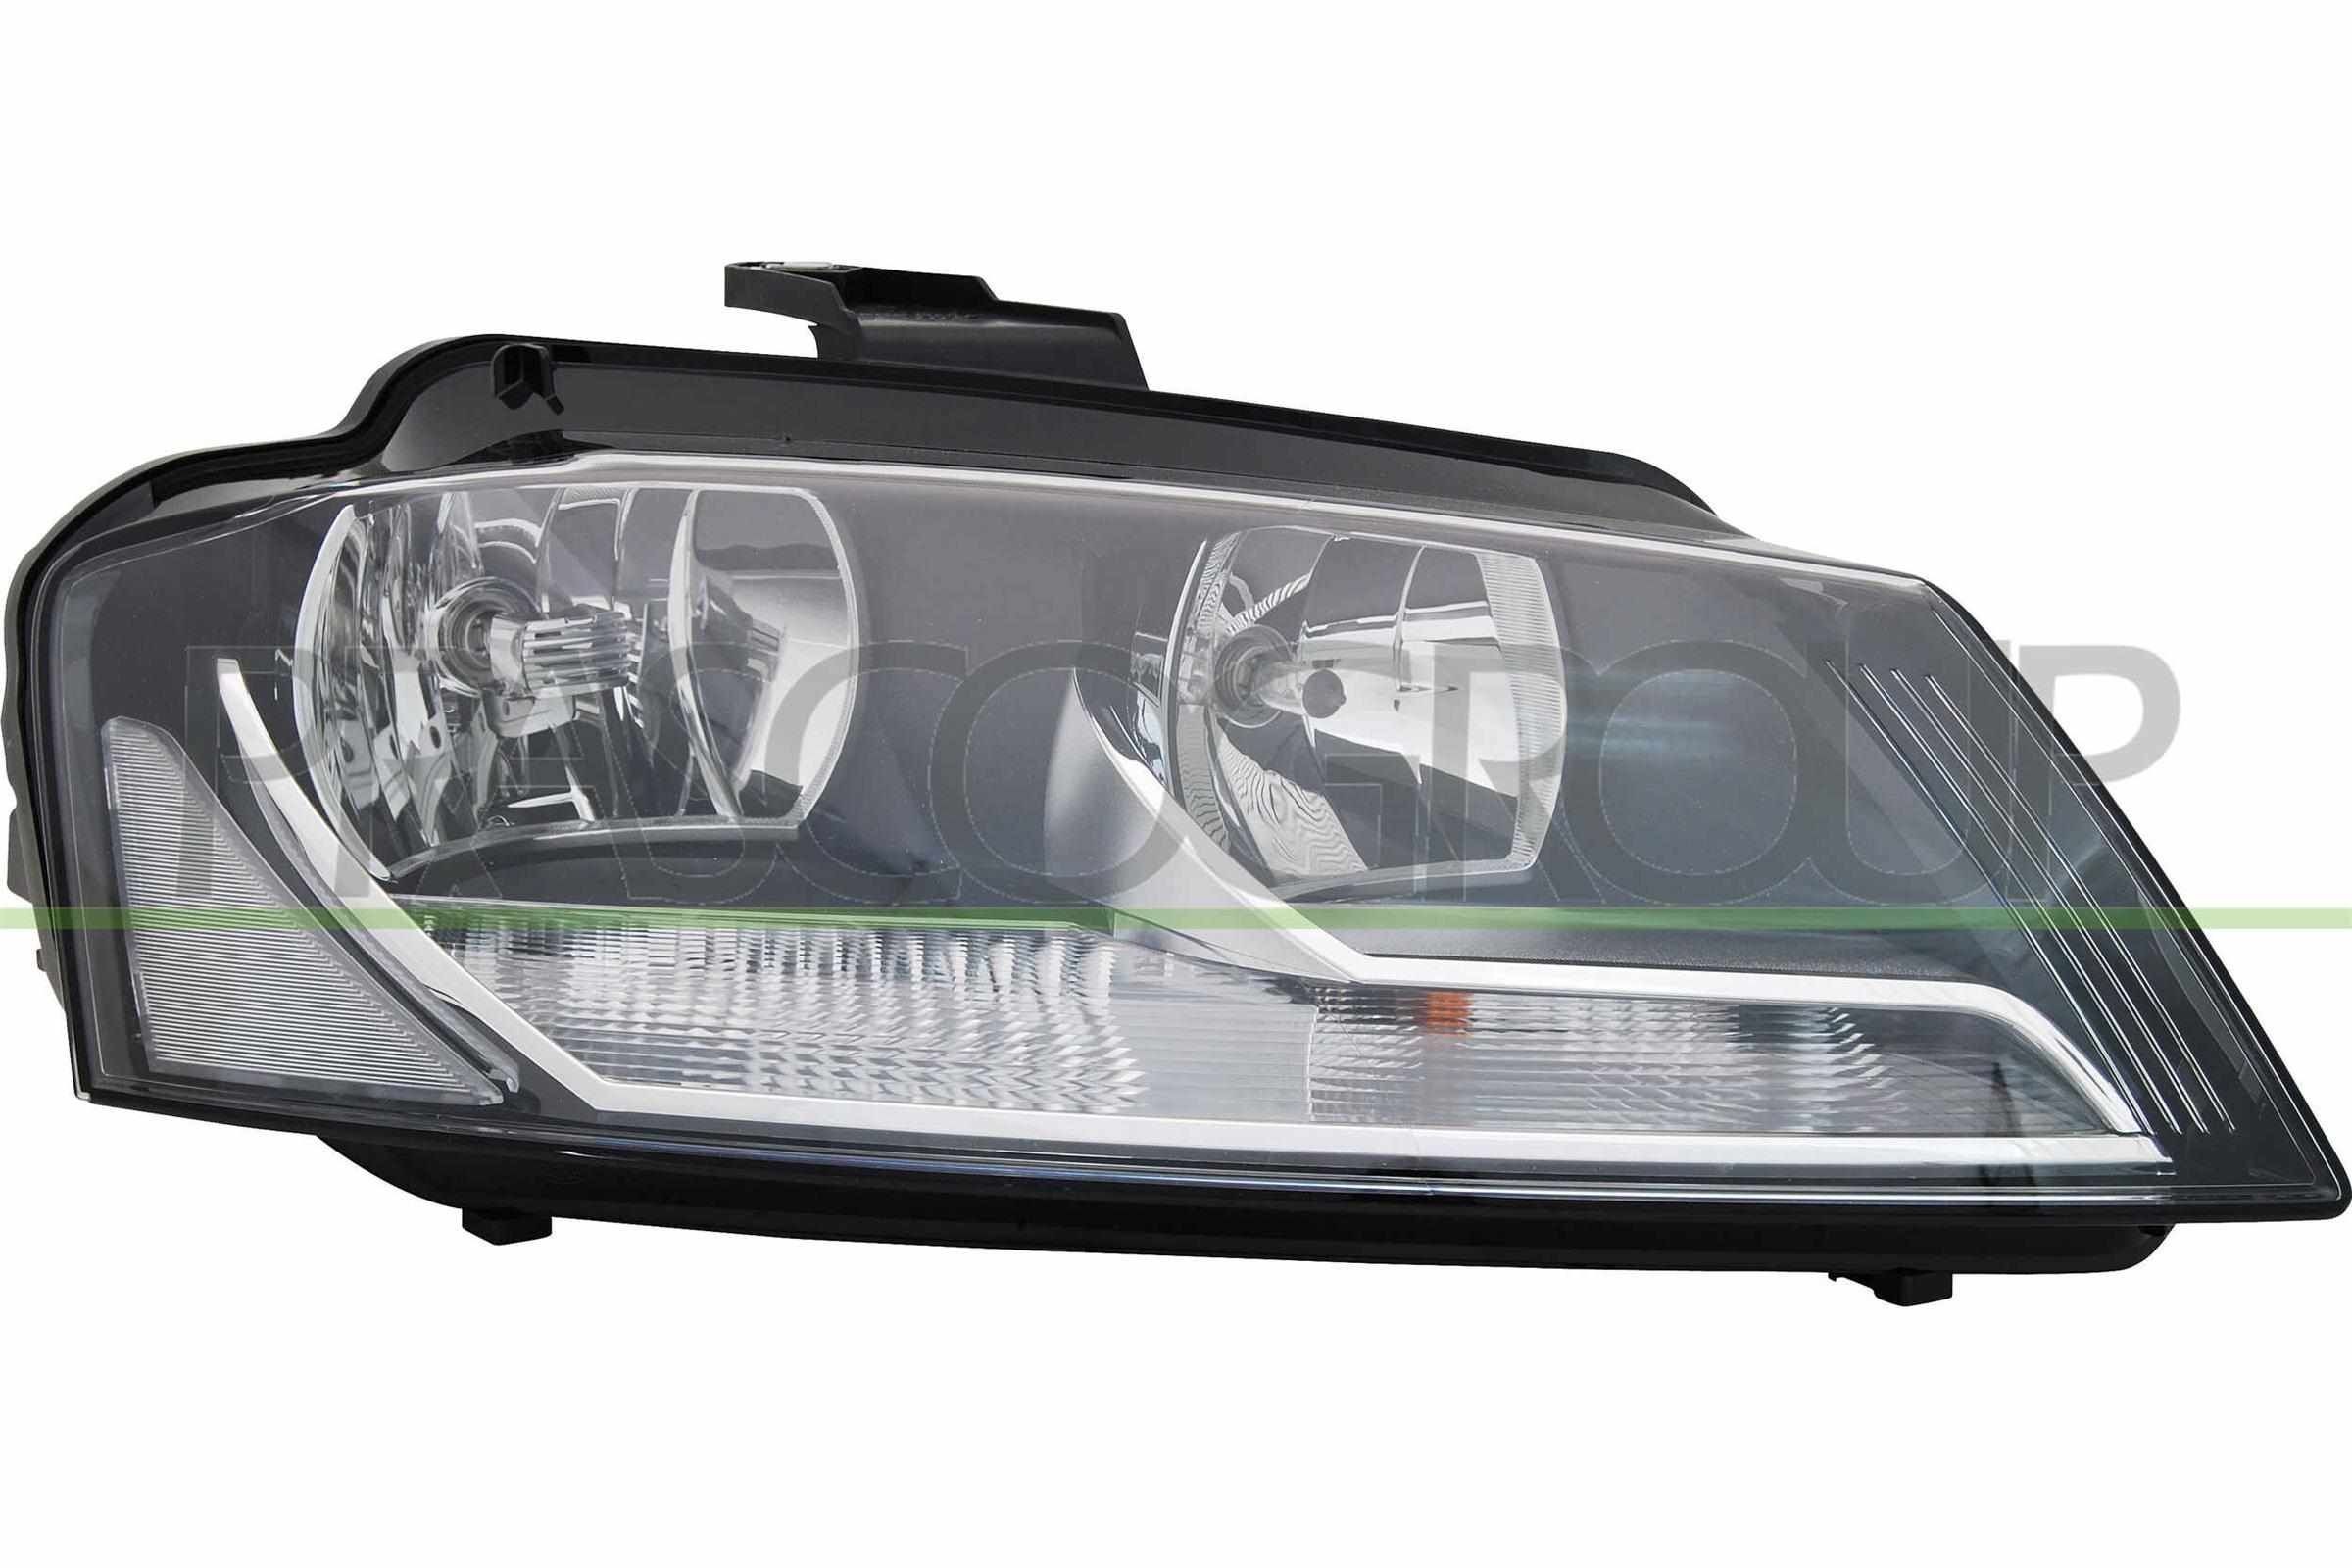 Scheinwerfer für Audi A3 8P LED und Xenon kaufen ▷ AUTODOC Online-Shop